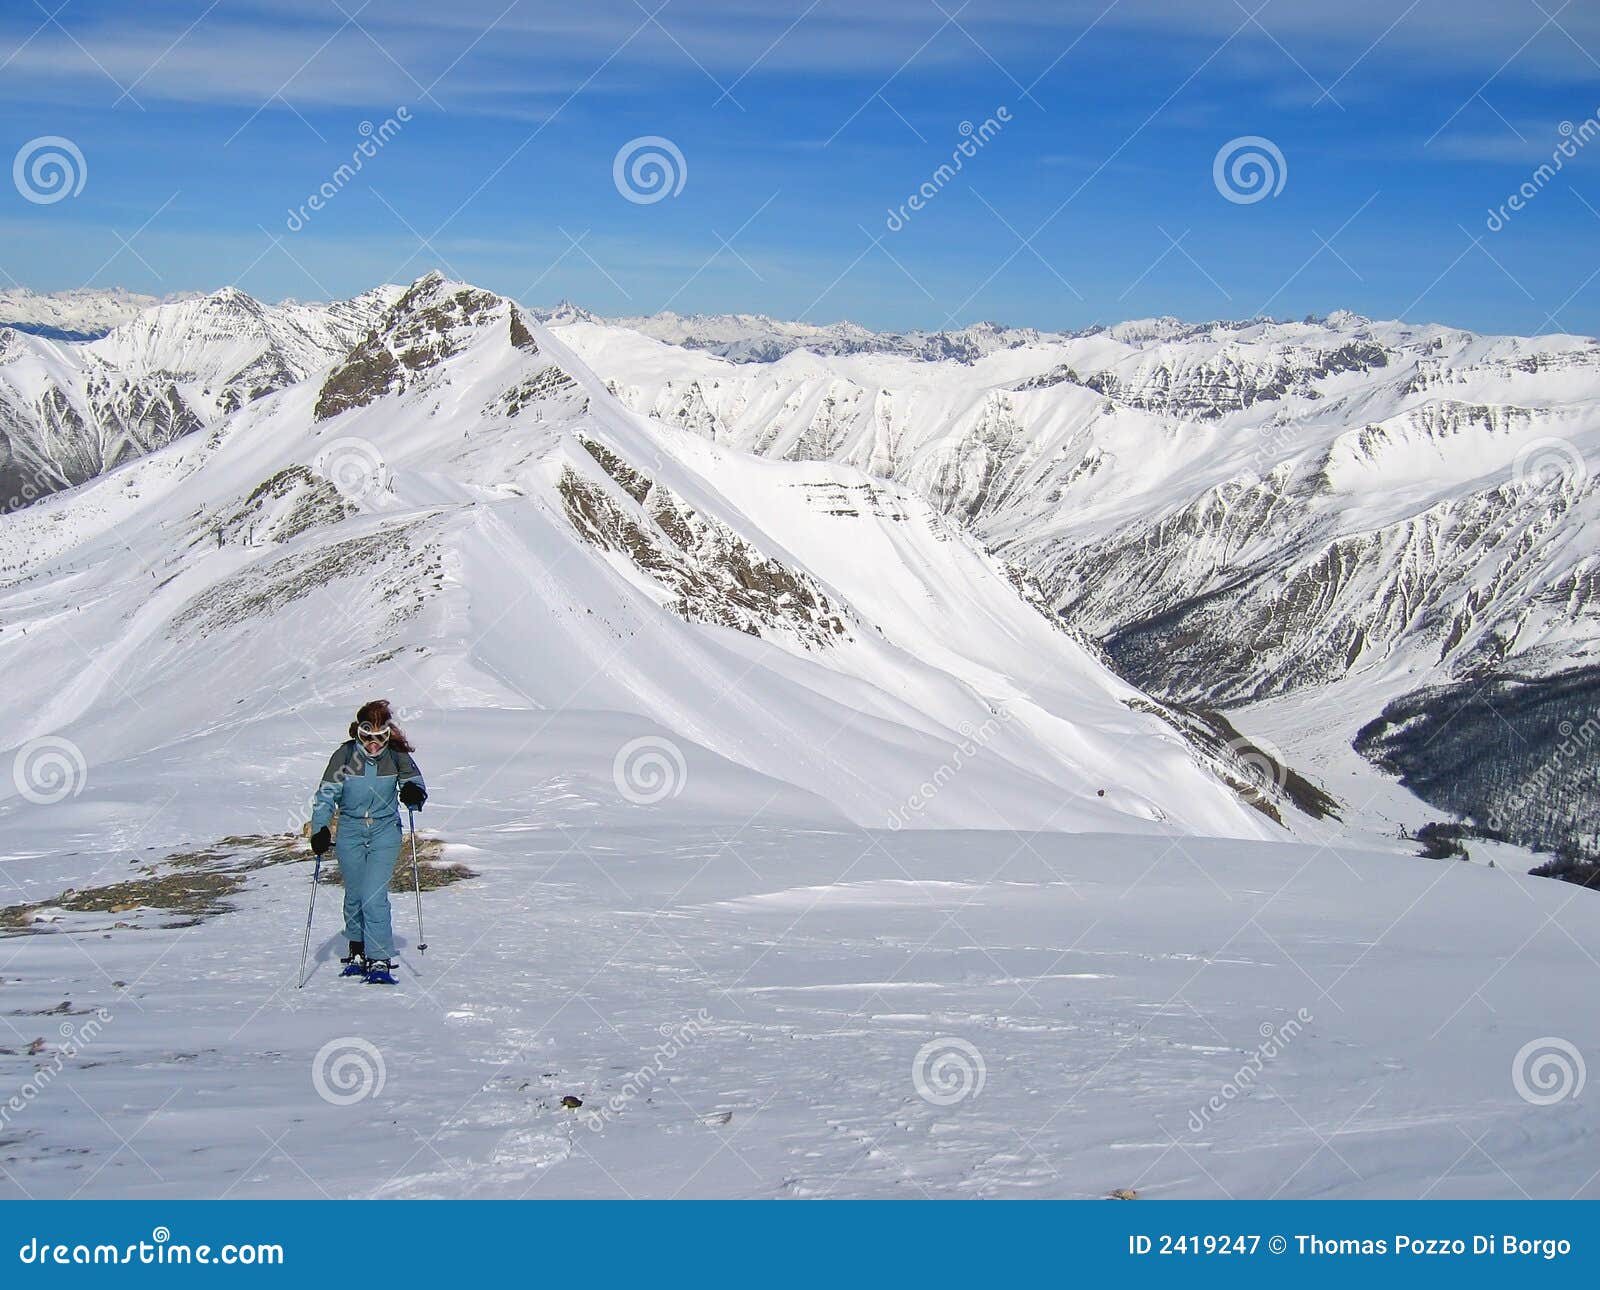 woman mountain trekker